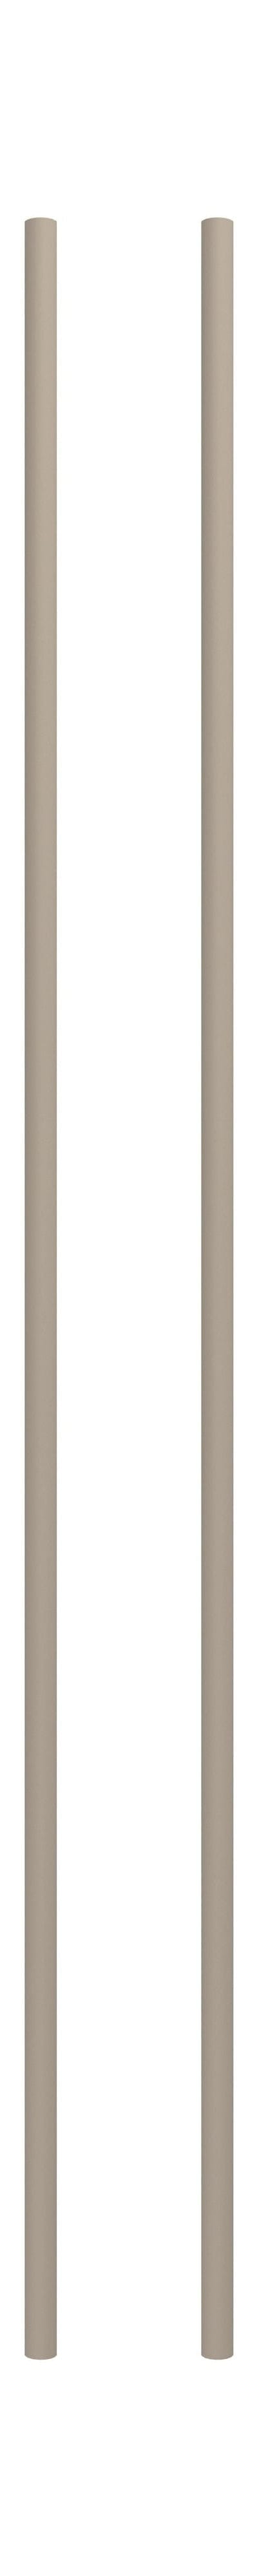 Moebe hyllsystem/vägghyllande ben 115 cm varm grå, uppsättning av 2